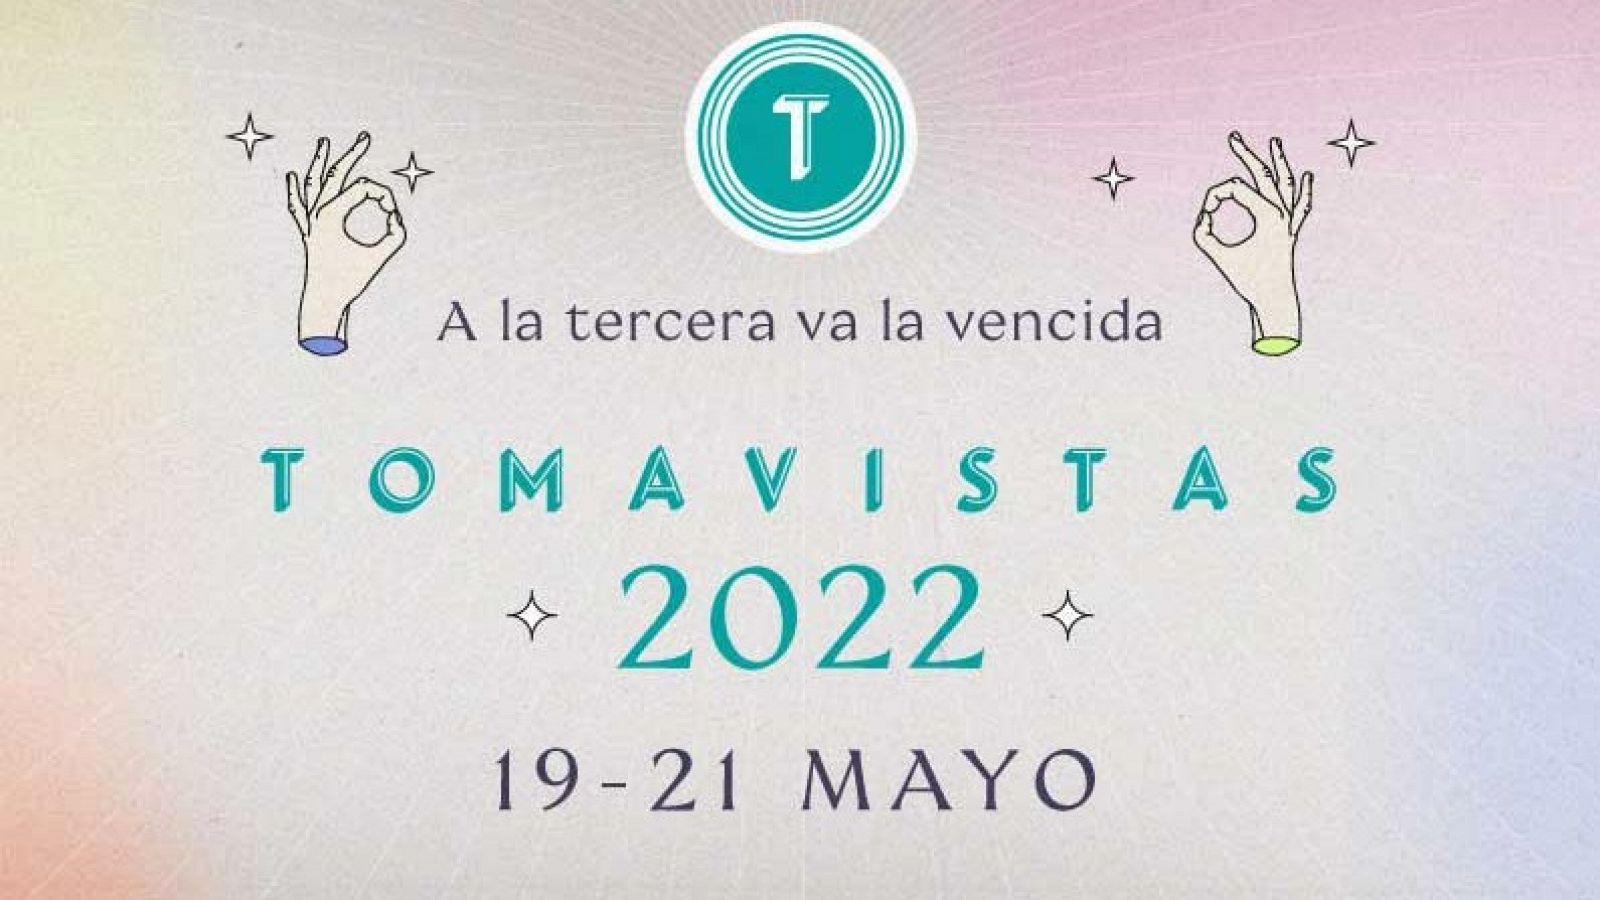 Tomavistas 2022